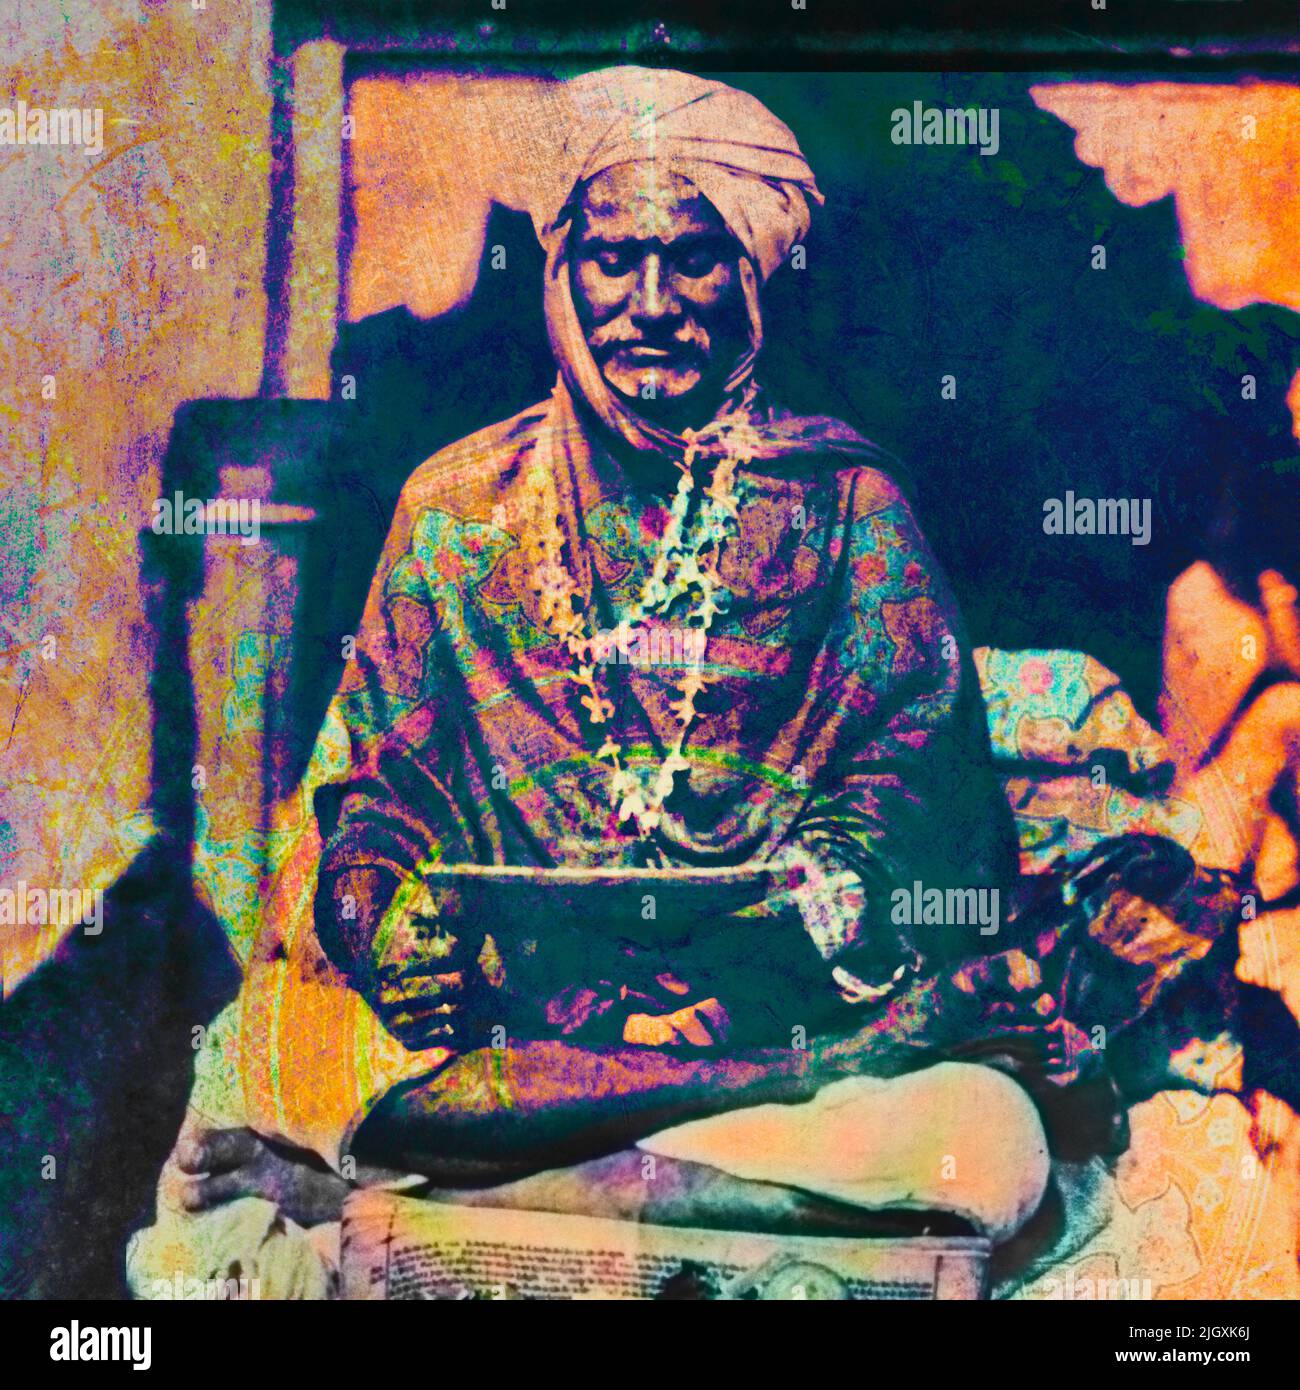 Arte Digital Fotografía remixed vintage de un hombre santo leyendo texto sagrado en la India. Foto de stock